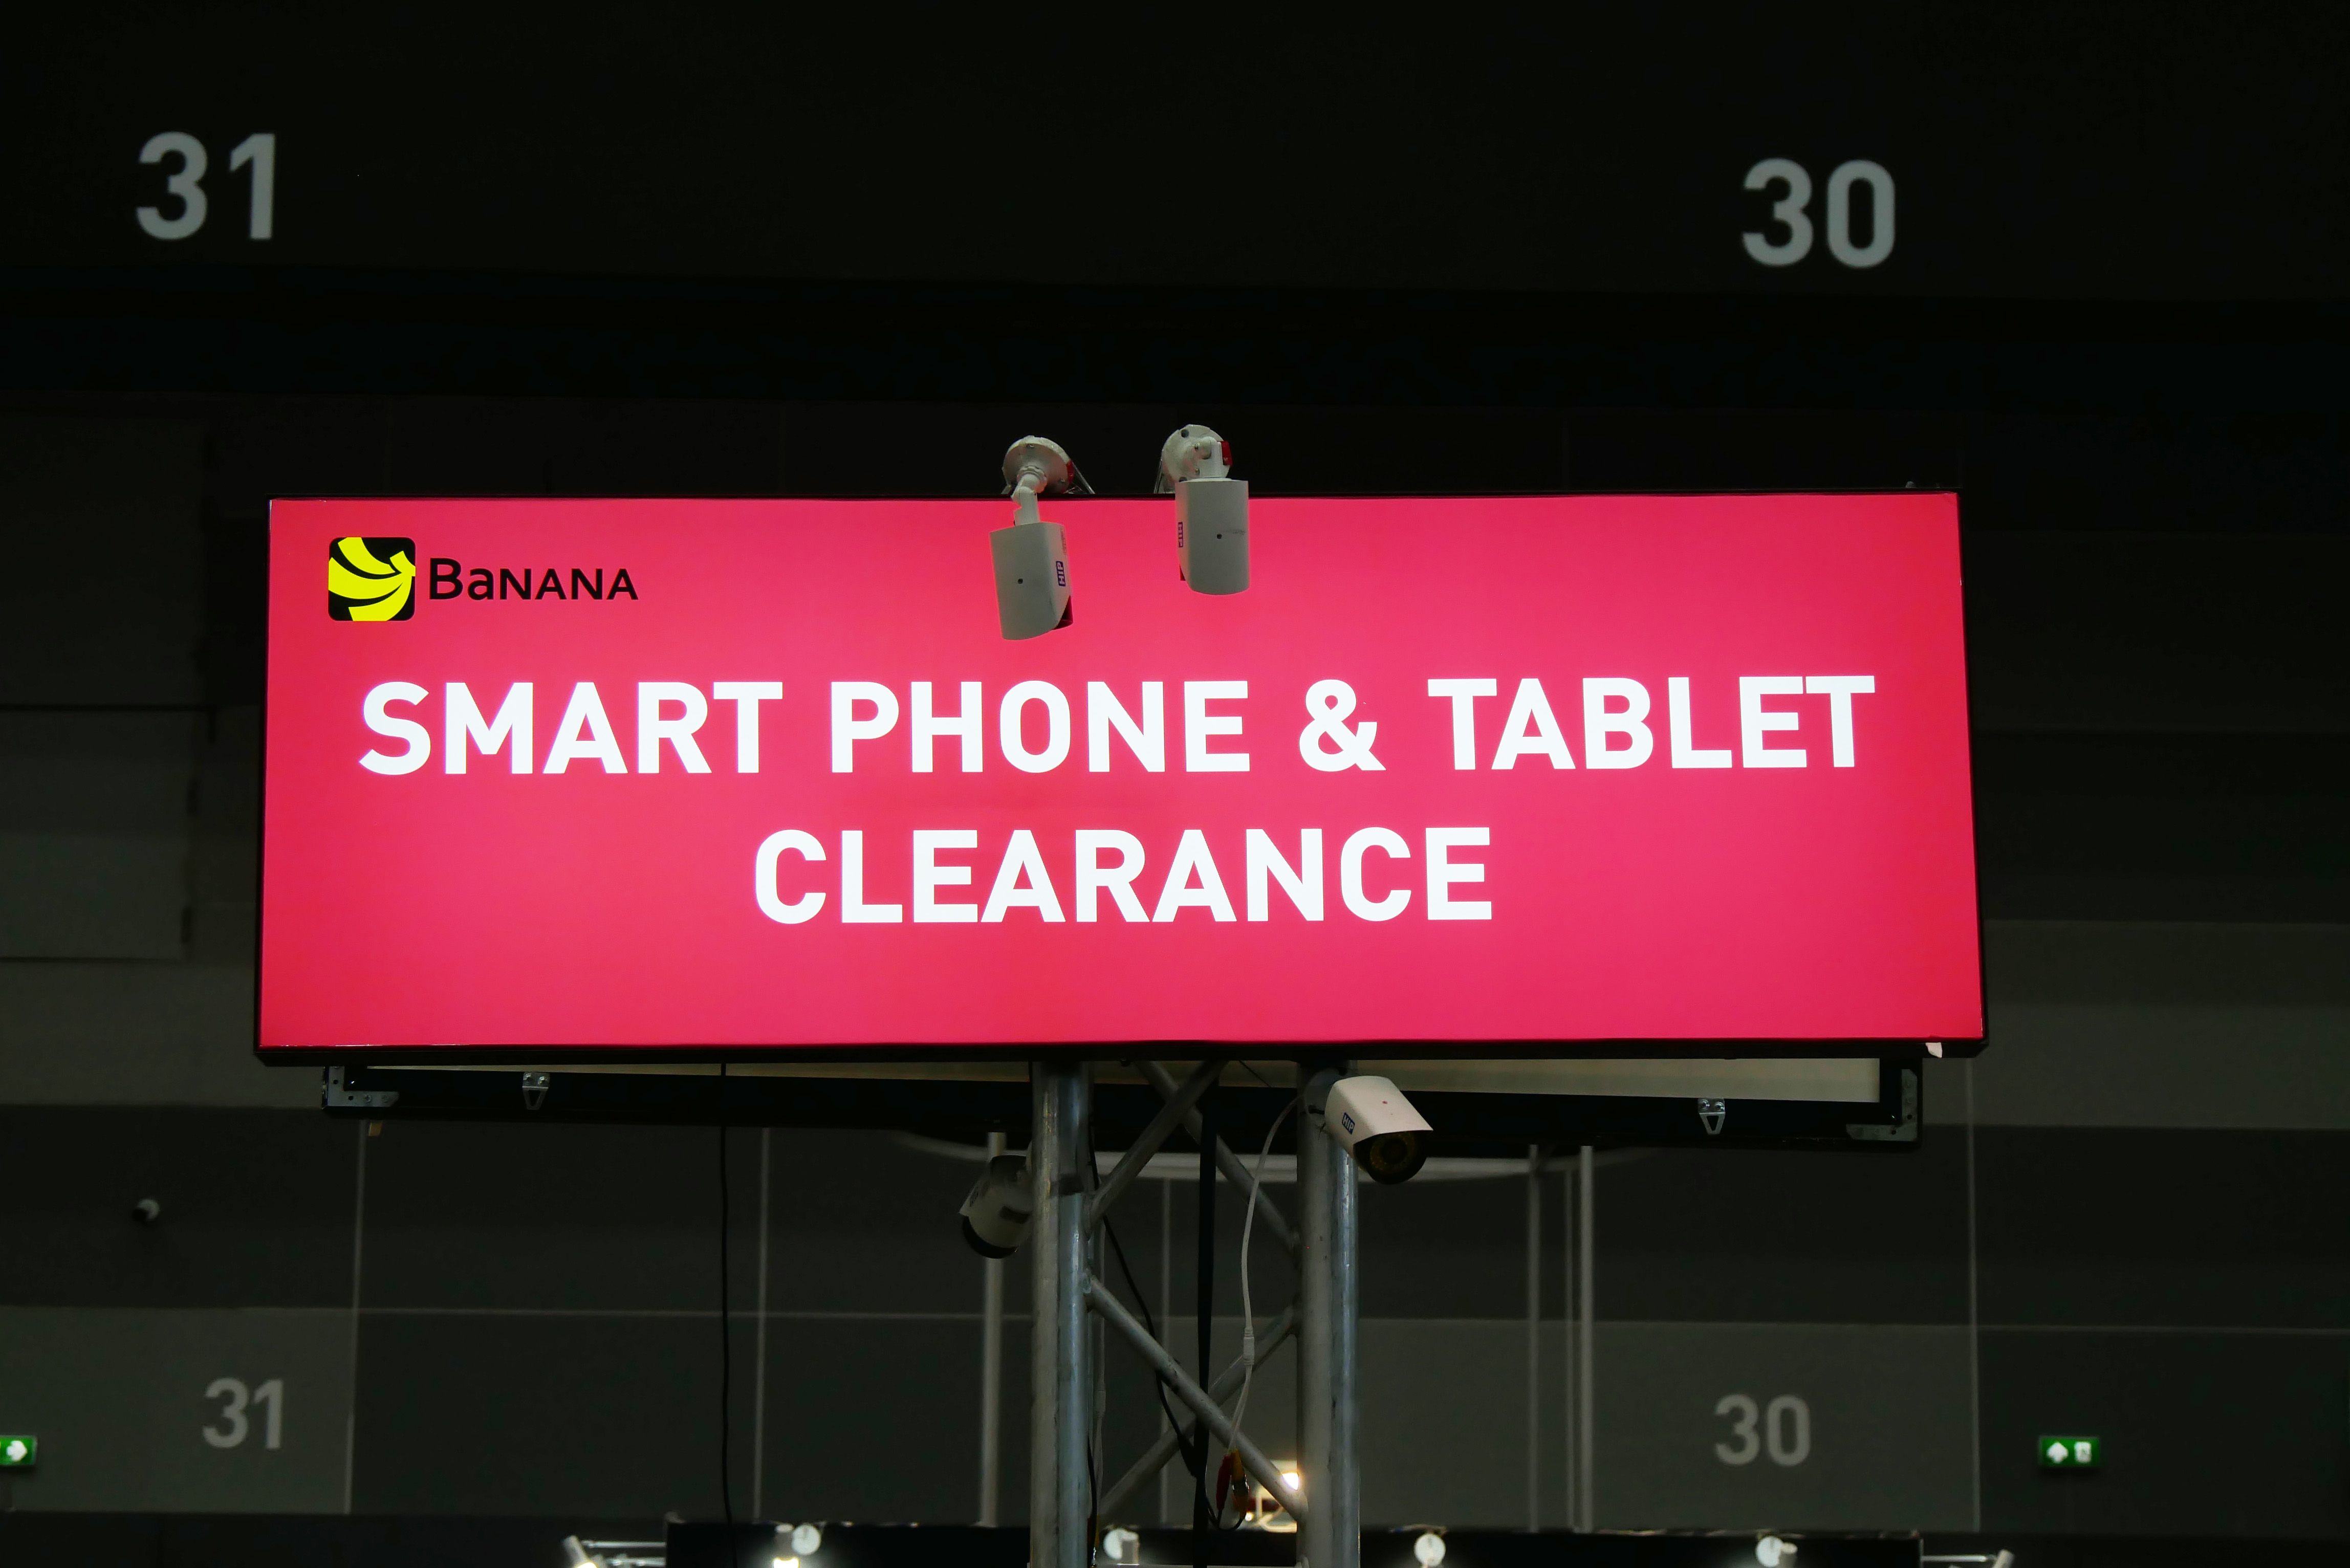 รวมมือถือ Clearance Sale เครื่องโชว์-เดโม ตัวแรงตกรุ่น กับราคาสุดเร้าใจ ในงาน Mobile Expo